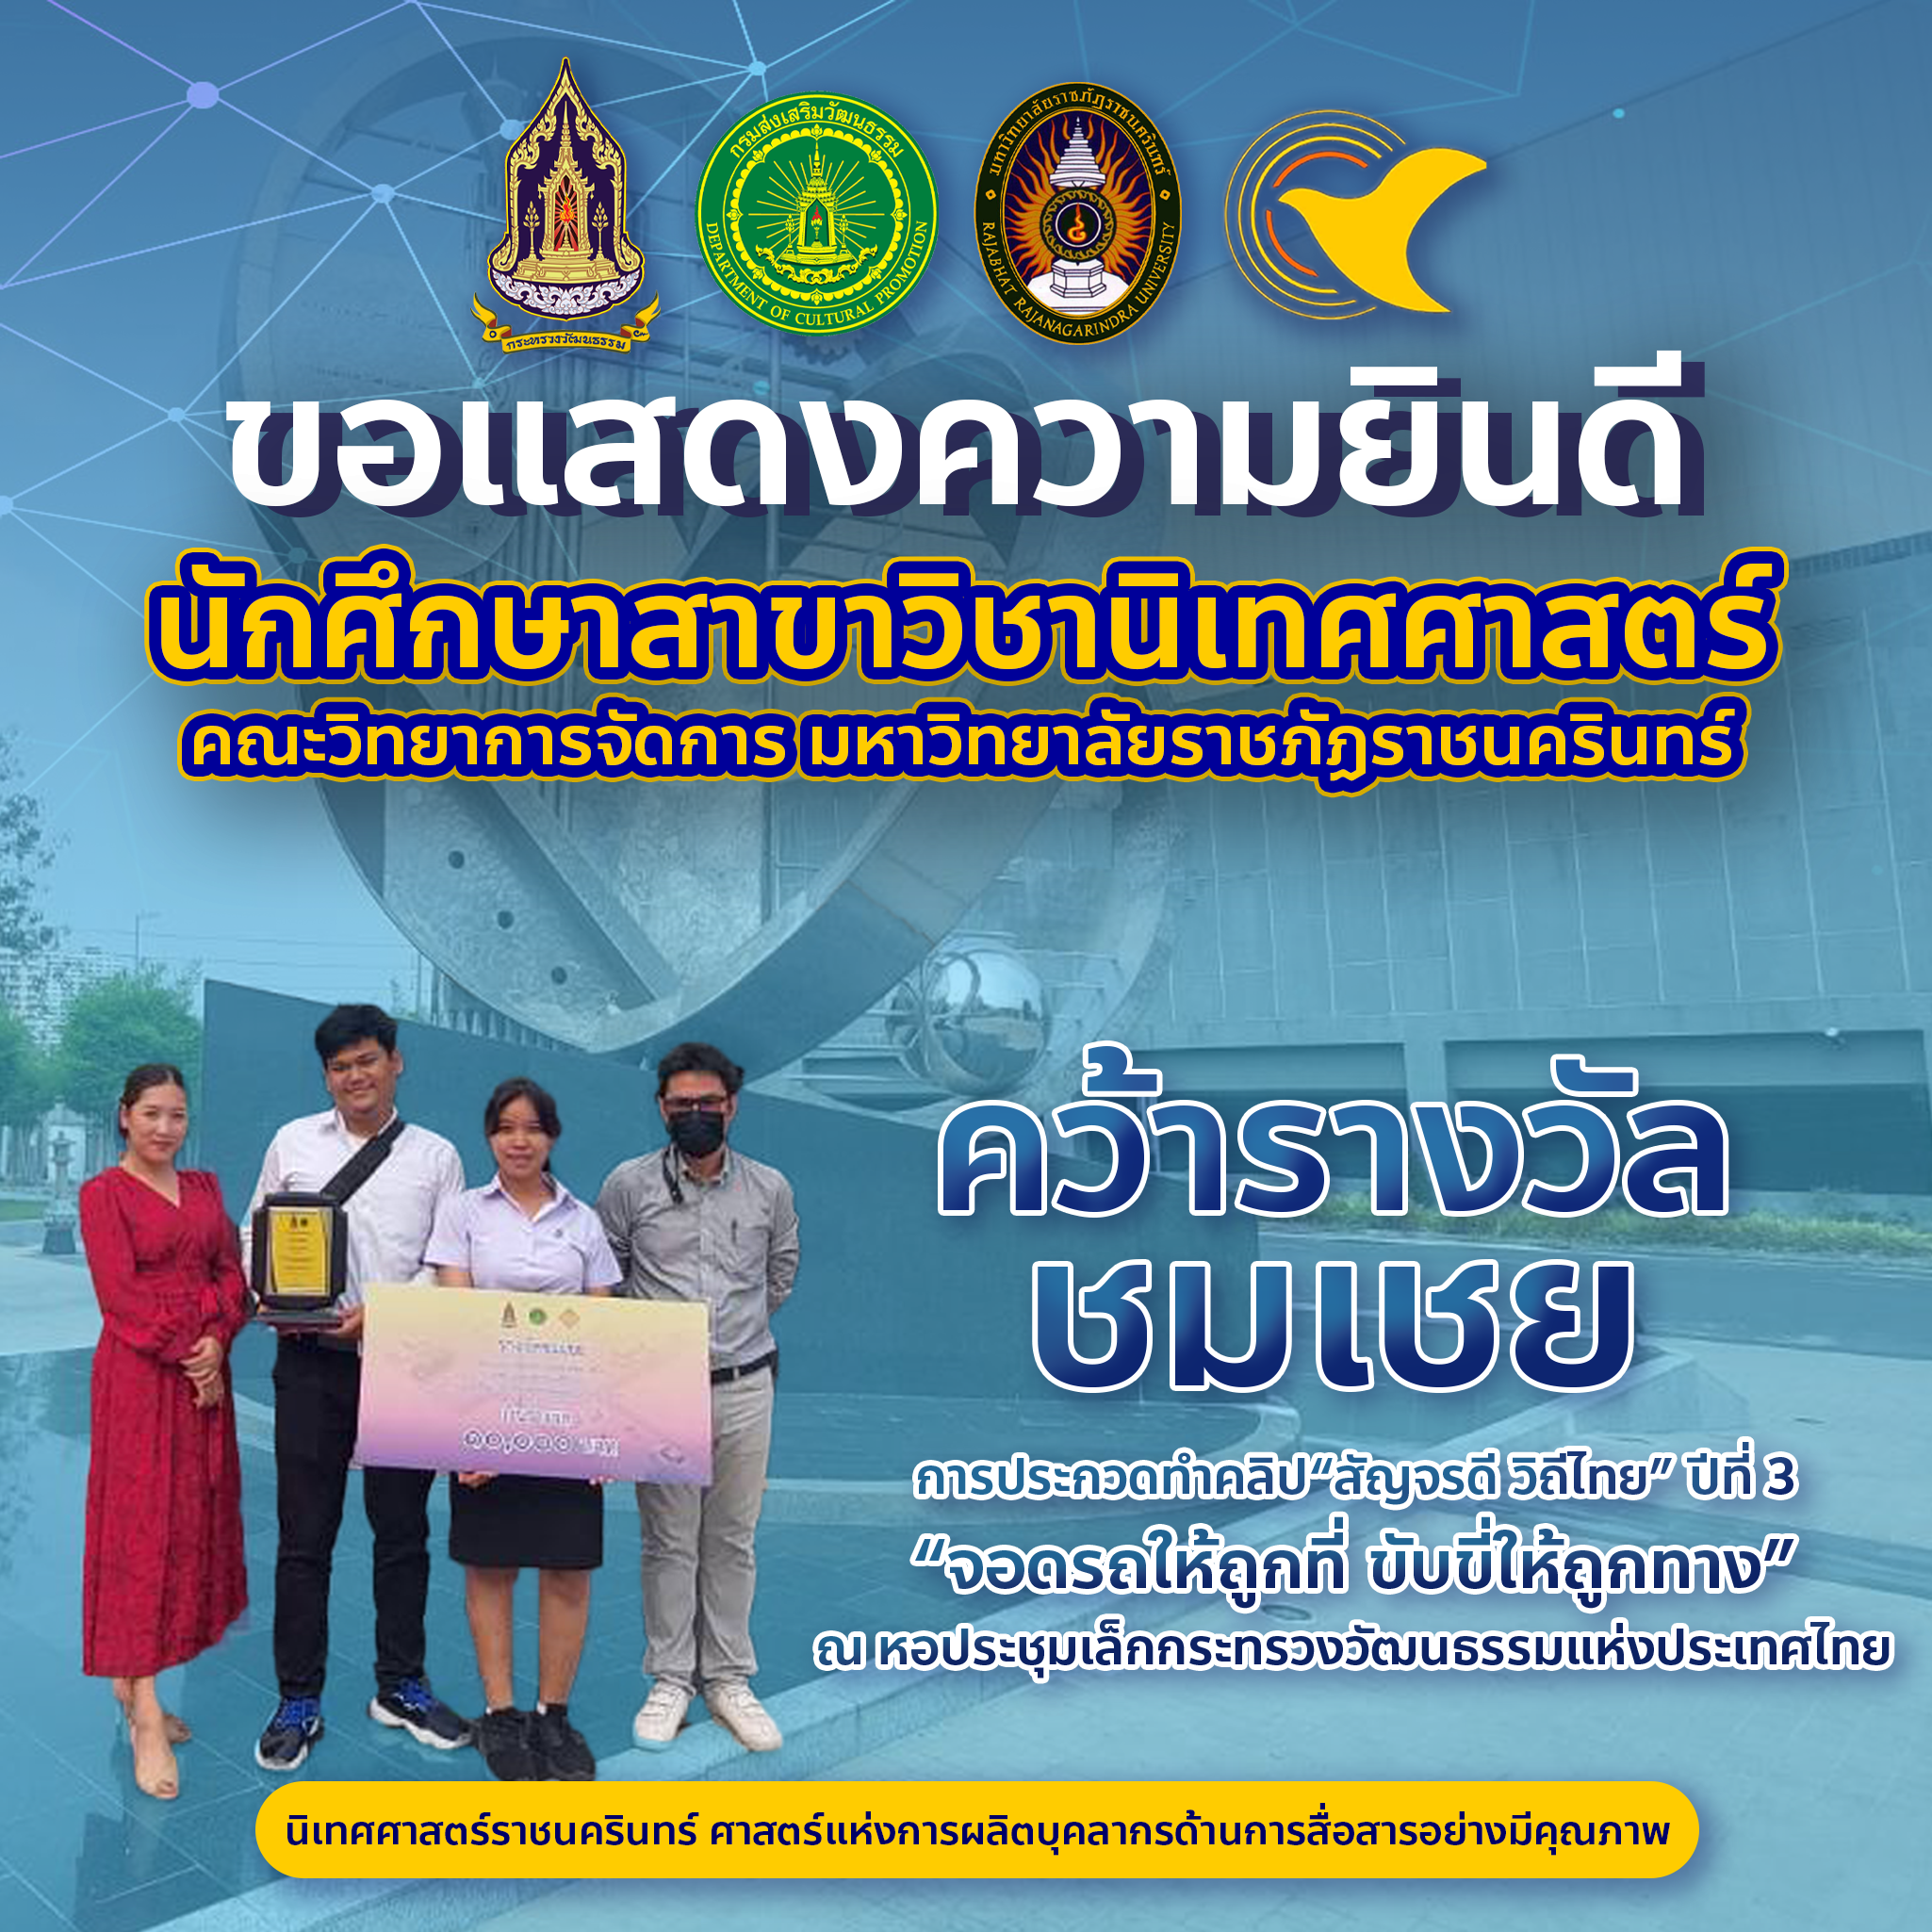 นักศึกษาสาขาวิชานิเทศศาสตร์และนักศึกษาสาขาวิชาคอมพิวเตอร์ศึกษา รับรางวัลชมเชย จากโครงการประกวดทำคลิป “สัญจรดี วิถีไทย” ปีที่ 3